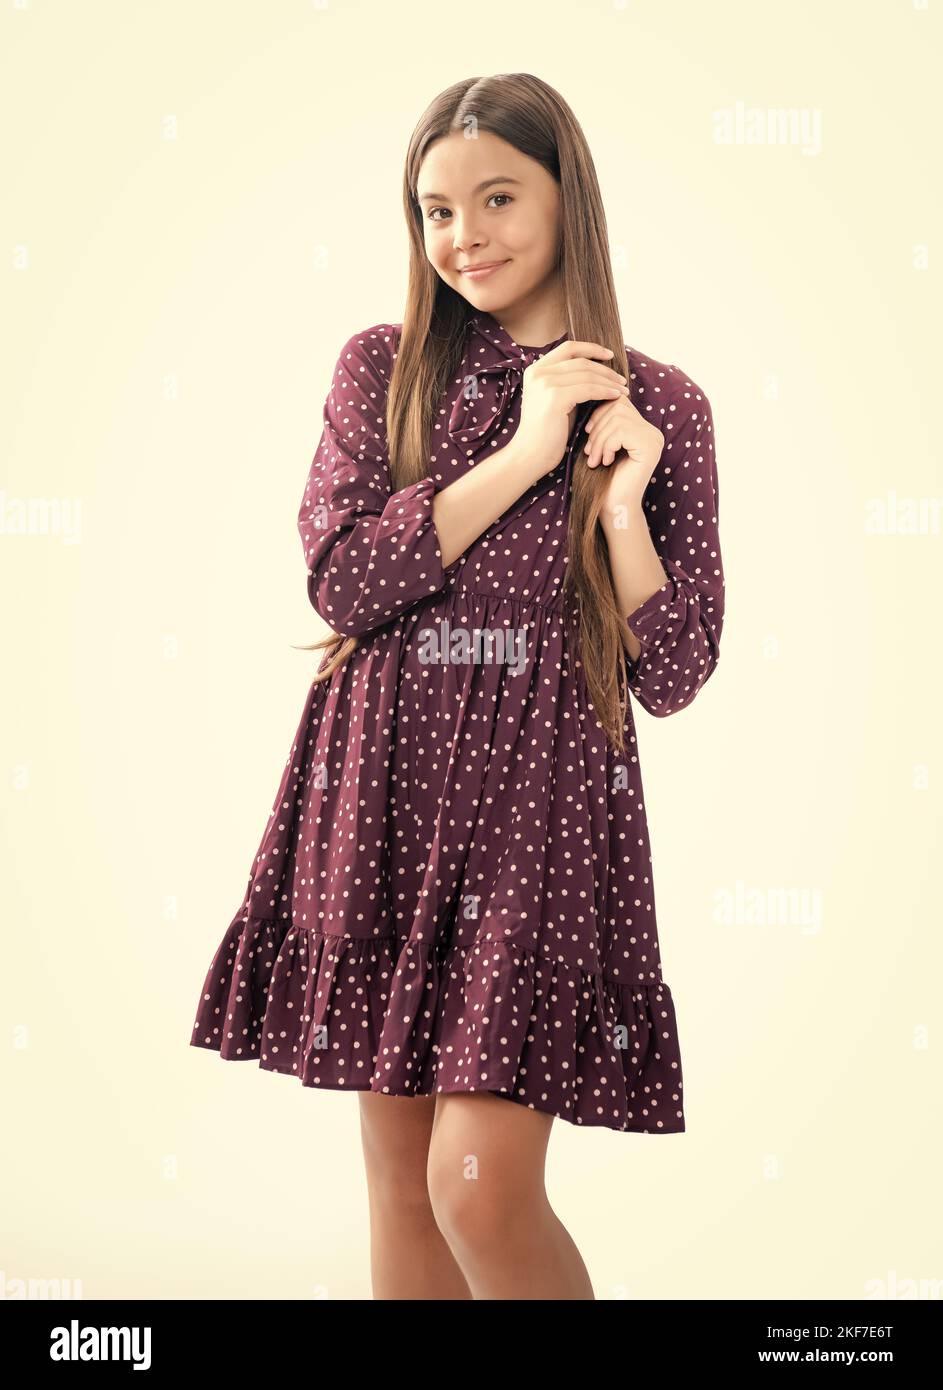 Élégant adolescent fille en mode robe d'été. Portrait d'une jeune fille  adolescente souriante Photo Stock - Alamy